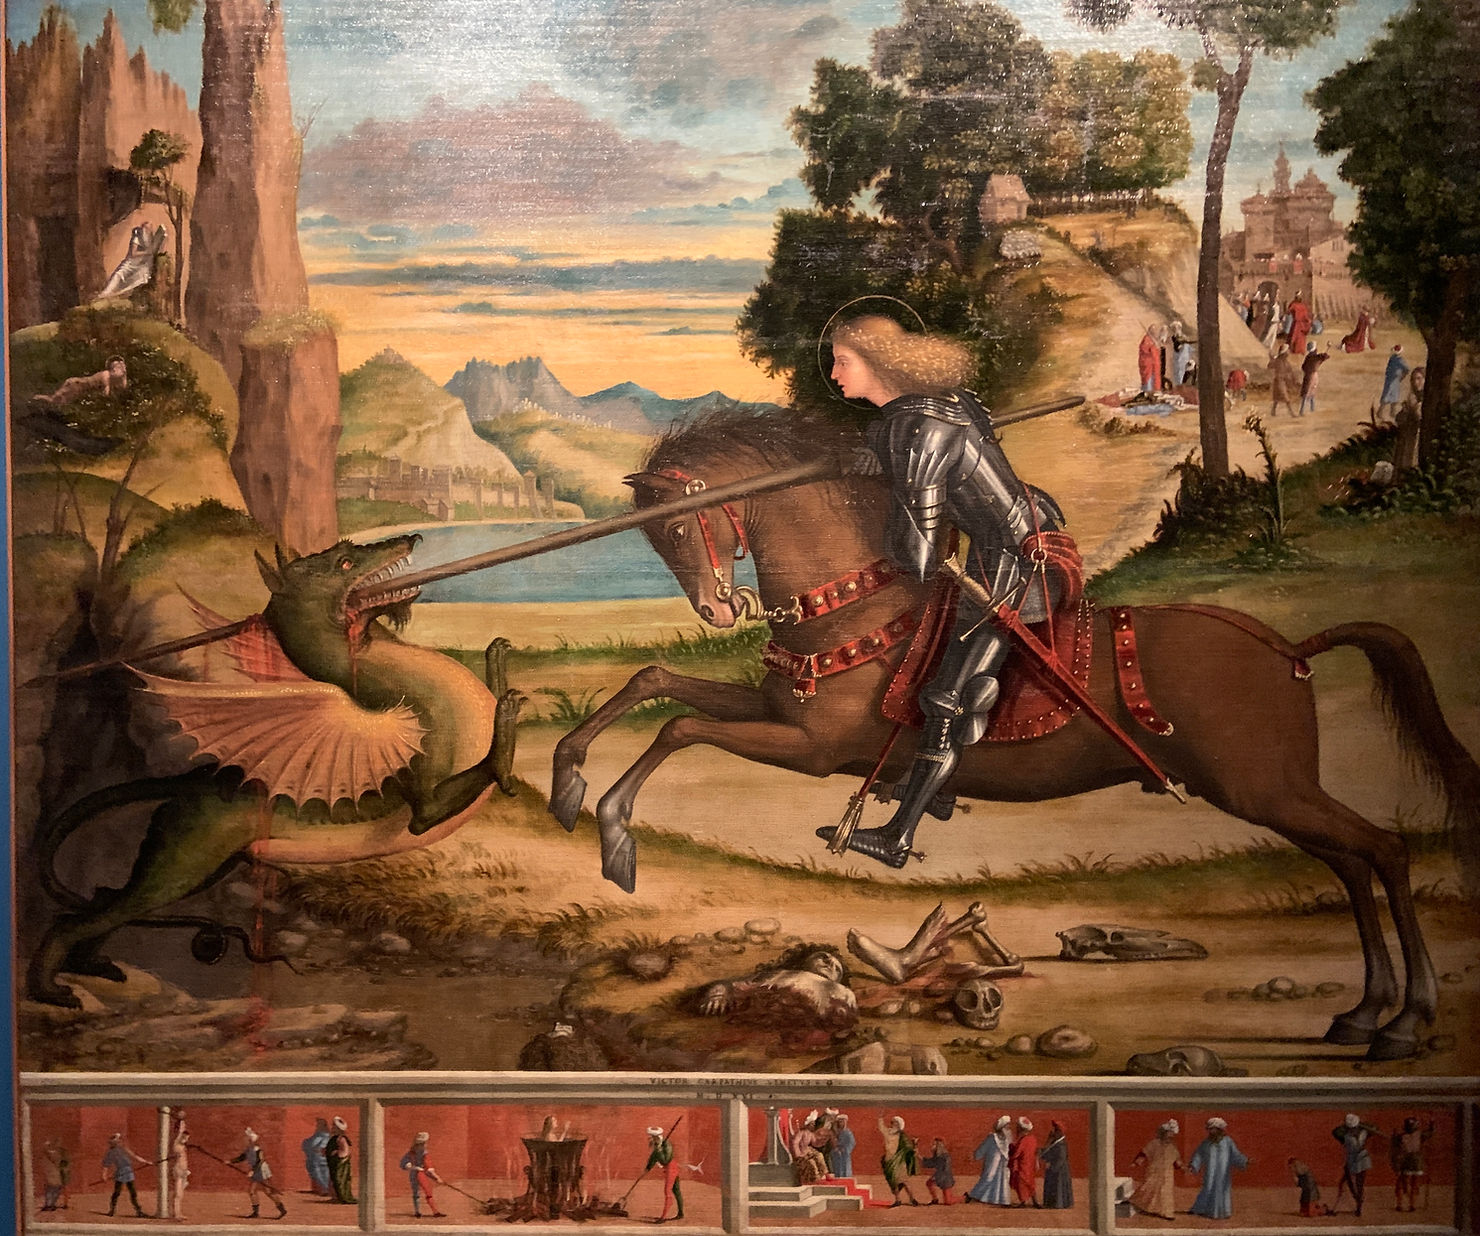 Vittore Carpaccio "San Giorgio che uccide il drago e quattro scene del suo martirio" 1516, olio su tela, Abbazia di San Giorgio Maggiore, Venezia. "